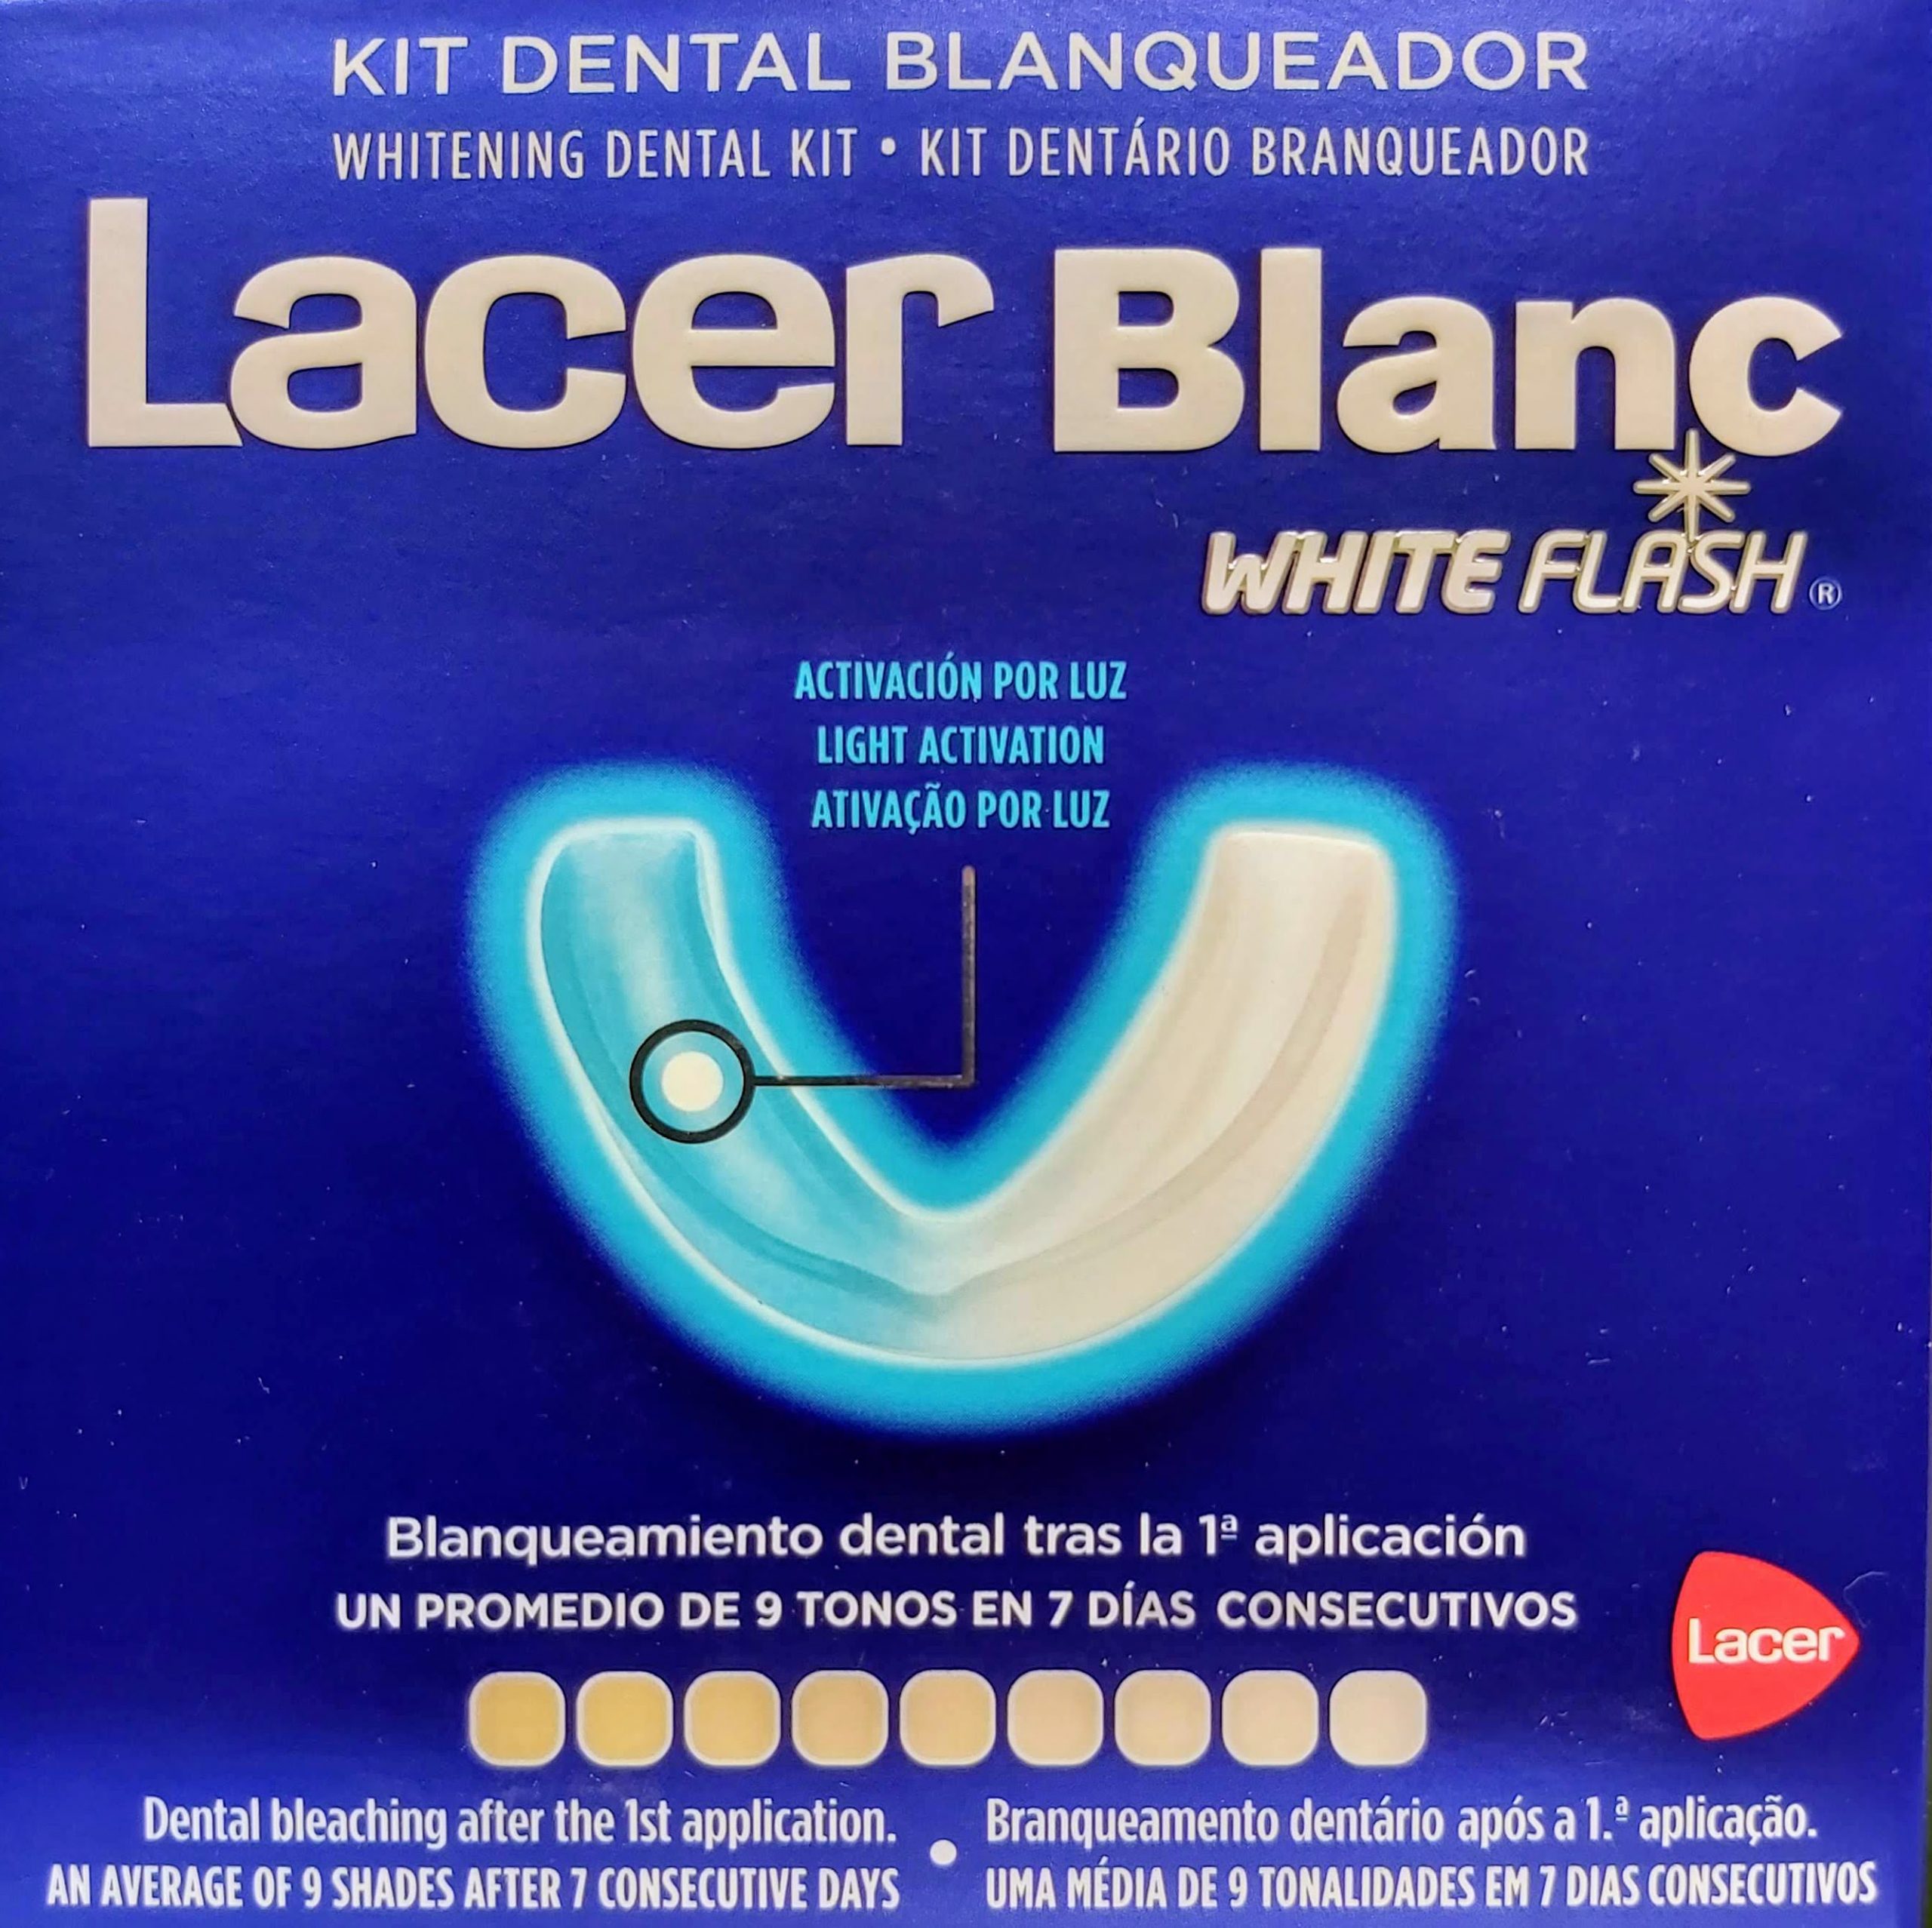 Comprar Lacer Blanc White Flash Kit Blanqueador Kit de blanqueamiento dental de efecto inmediato que dejará tus dientes hasta 8 tonos más claros tras la primera aplicación.